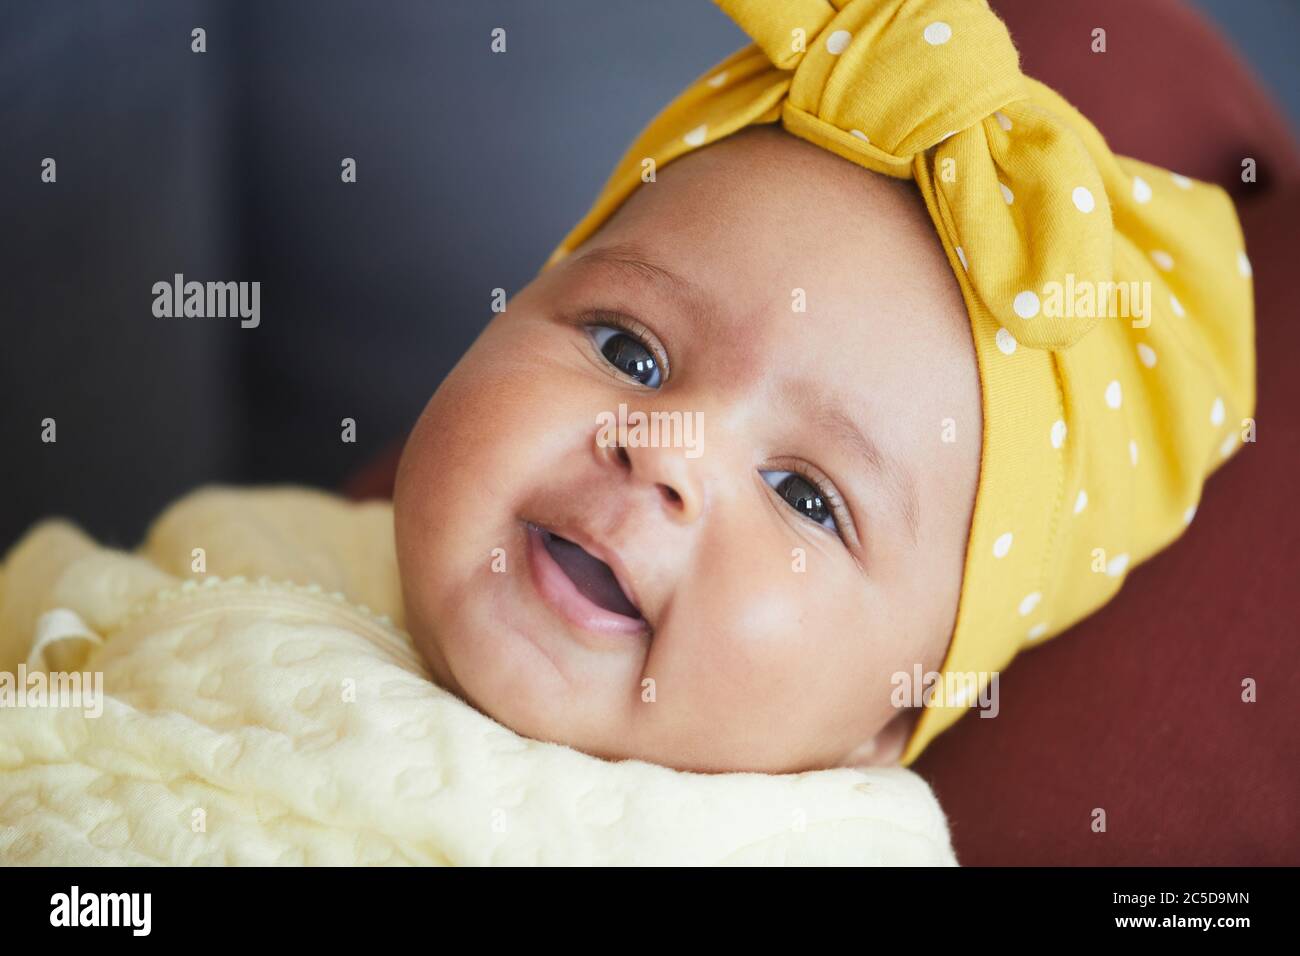 Portrait de petite fille mignonne avec un noeud sur la tête regardant l'appareil photo Banque D'Images